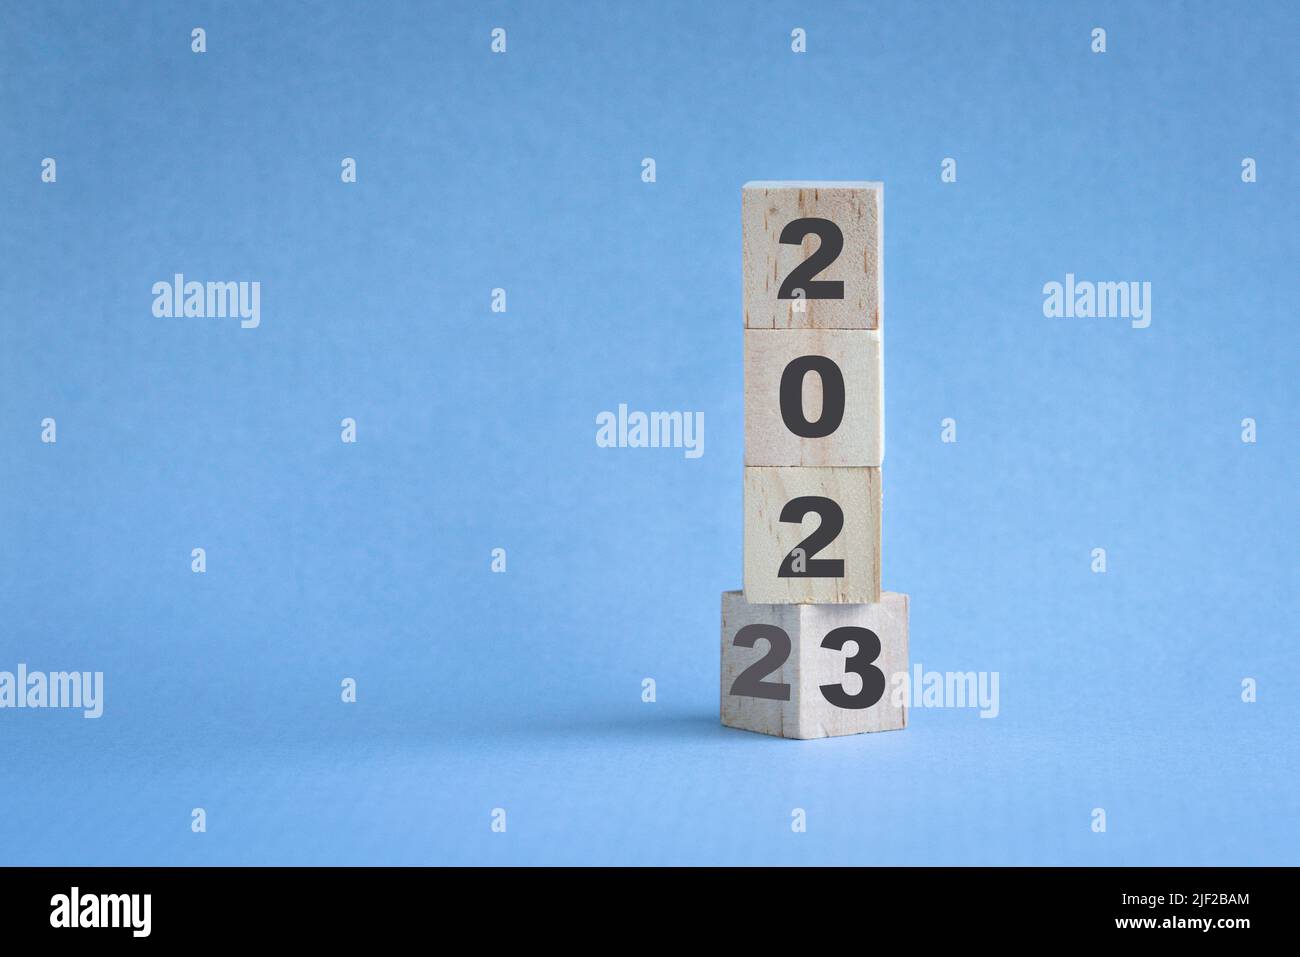 Holzwürfelbestand gestapelt, Änderung von 2022 auf 2023. Blauer Hintergrund, mit Kopierbereich. Stockfoto